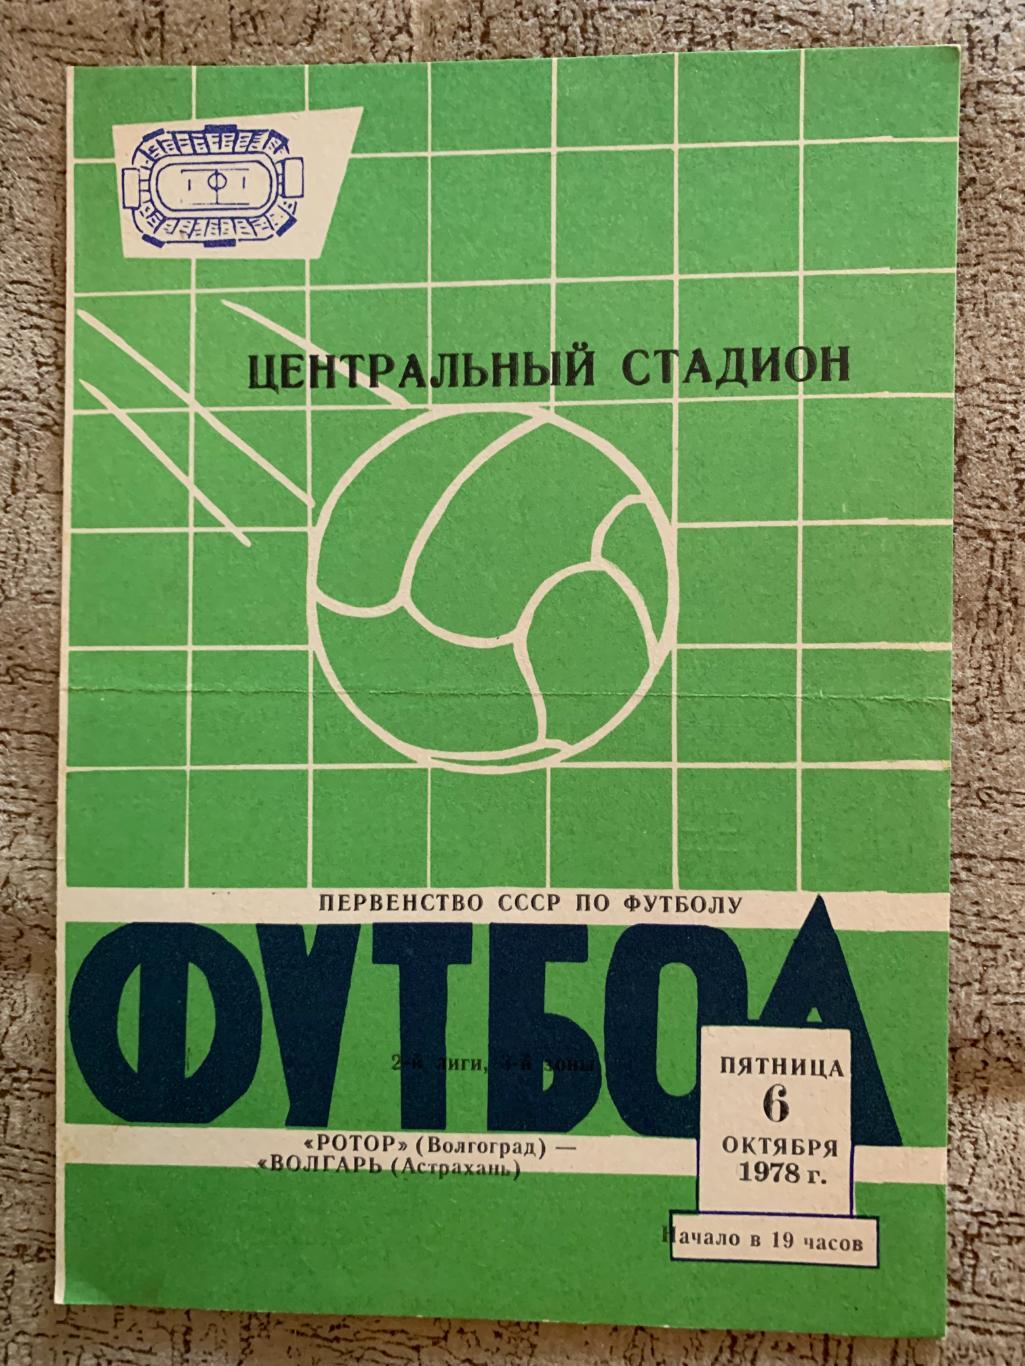 Ротор Волгоград - Волгарь Астрахань 6.10.1978